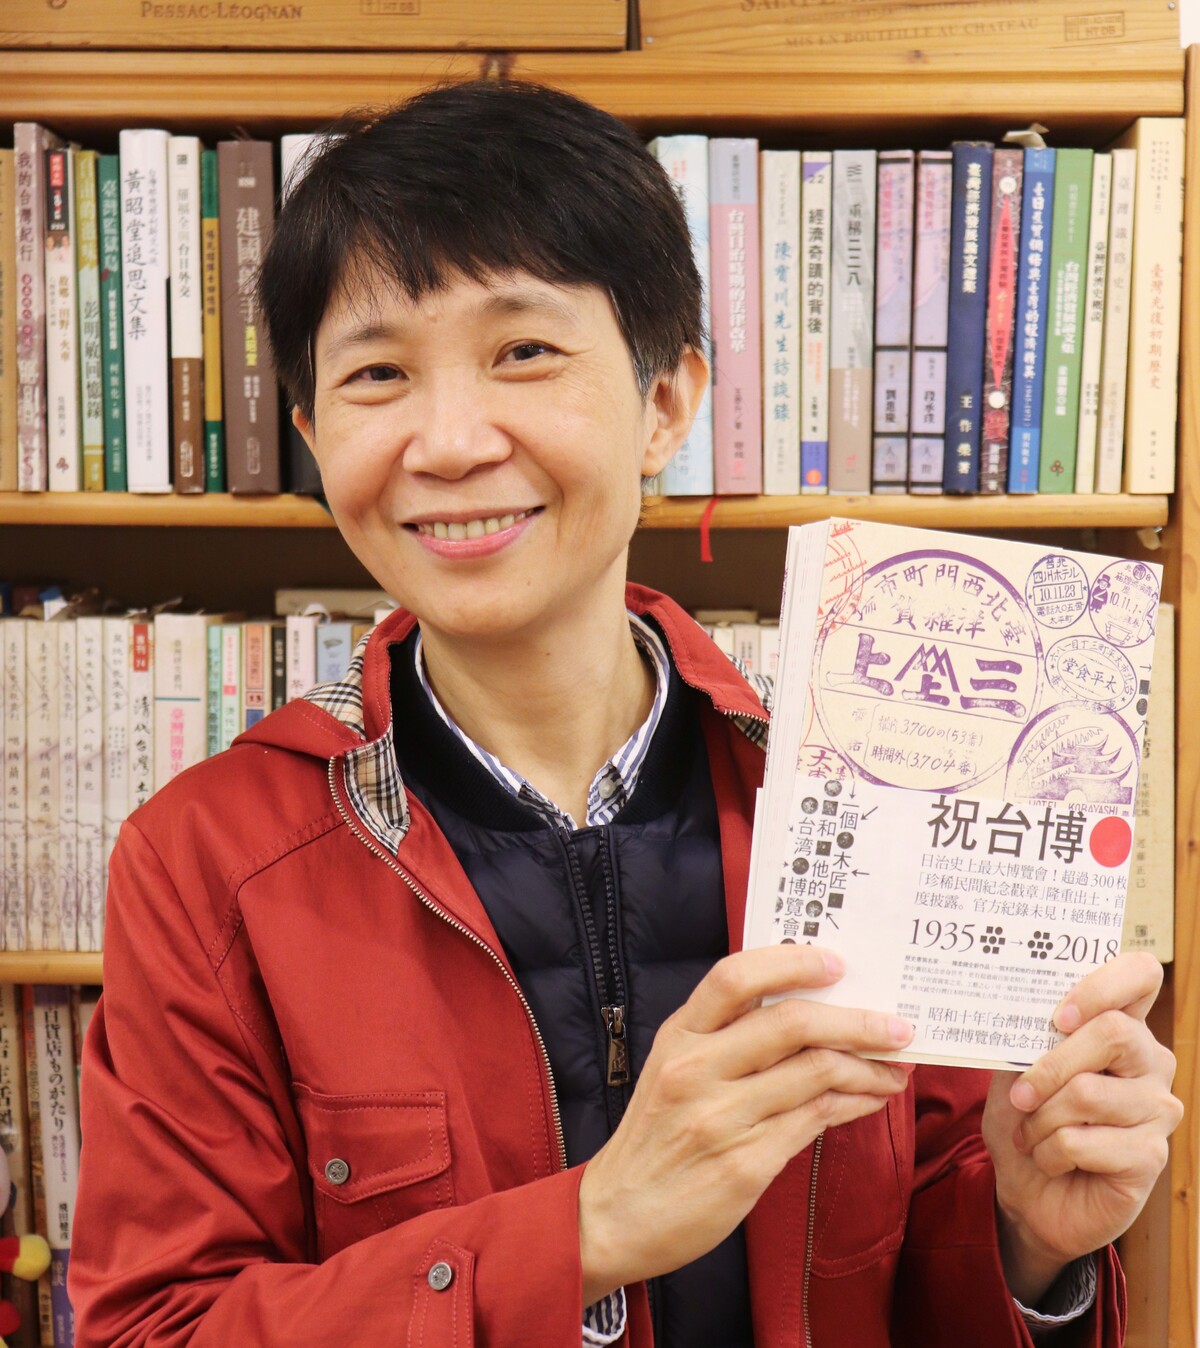 追悼】作家の陳柔縉さんが旅立たれました : 太台本屋 tai-tai books